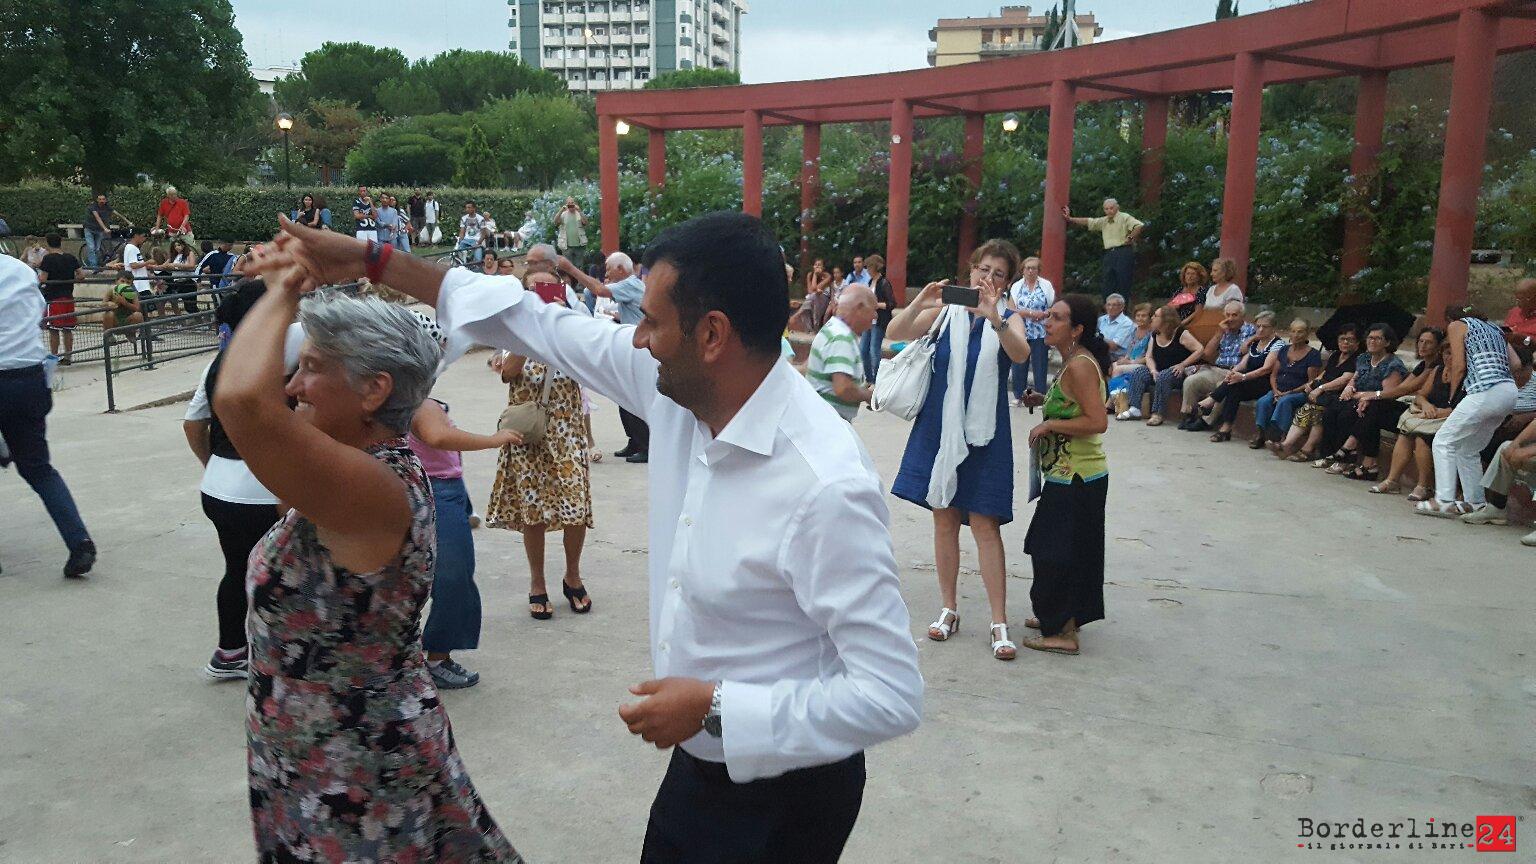 Il sindaco Decaro impegnato in un ballo nella scorsa edizione di "Balera nel parco"